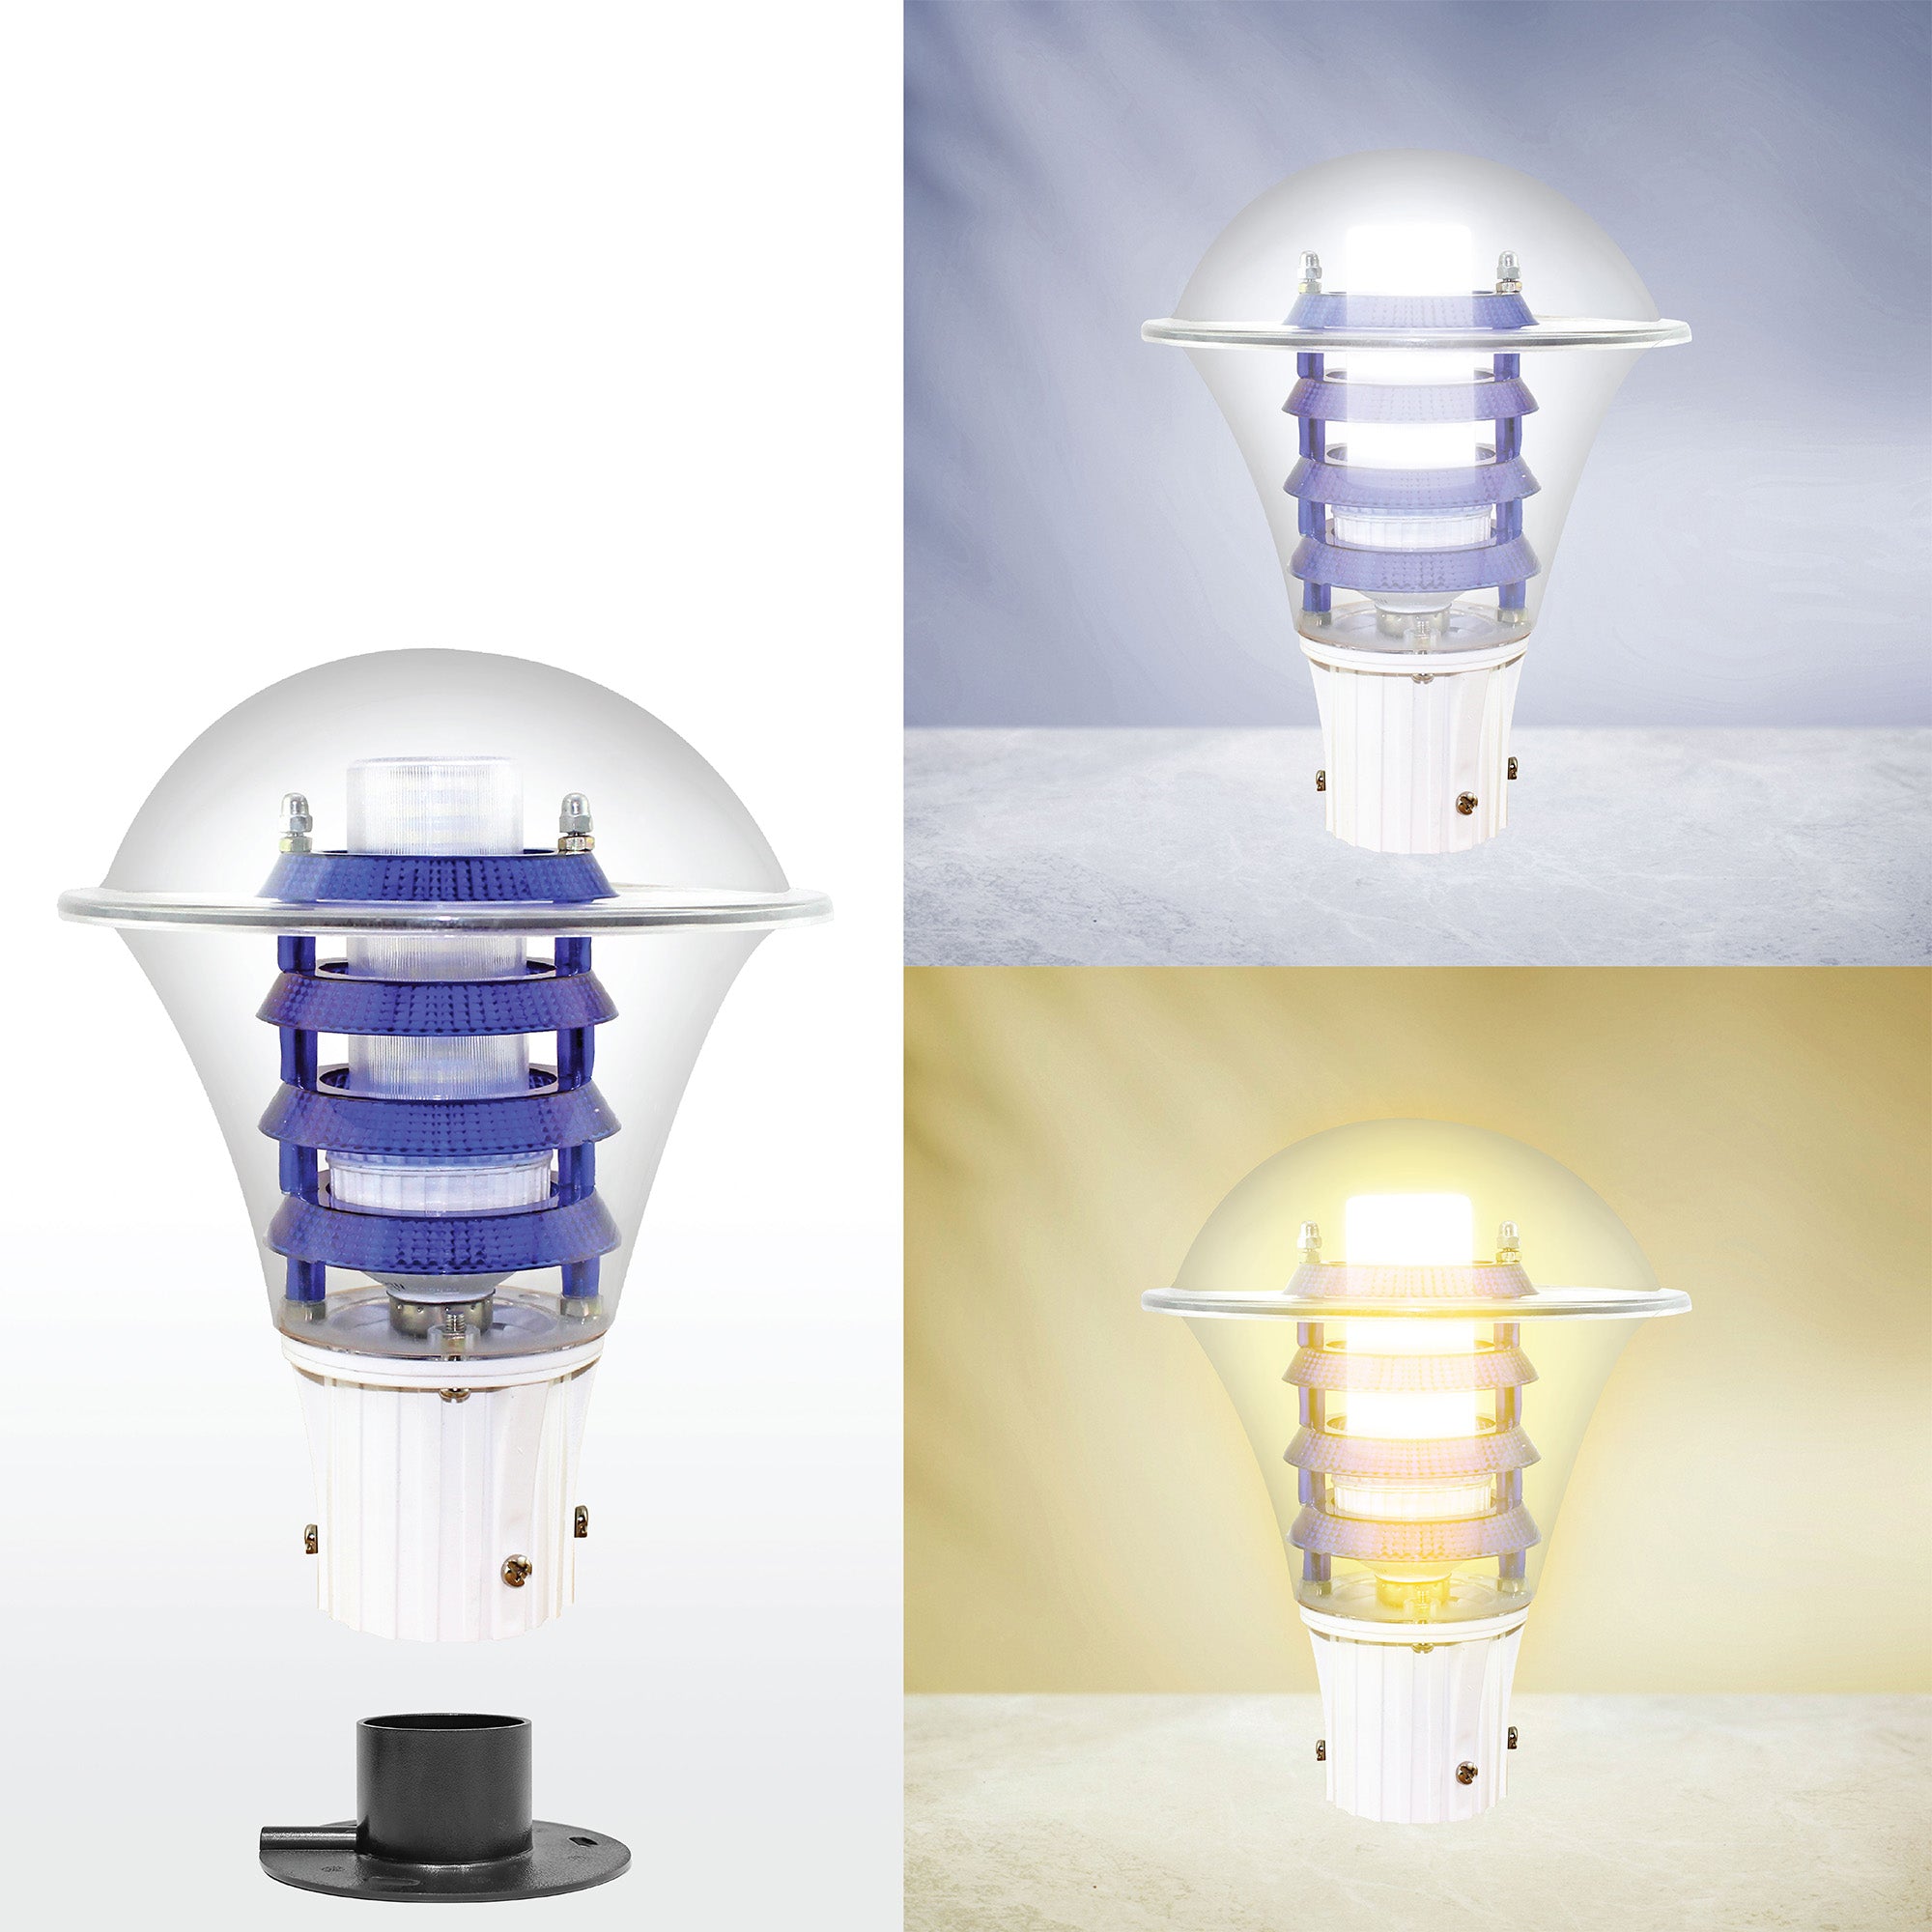 Viva PC Cool Warm Comparison | Best LED Gate Light Model Online at affordable price Online 